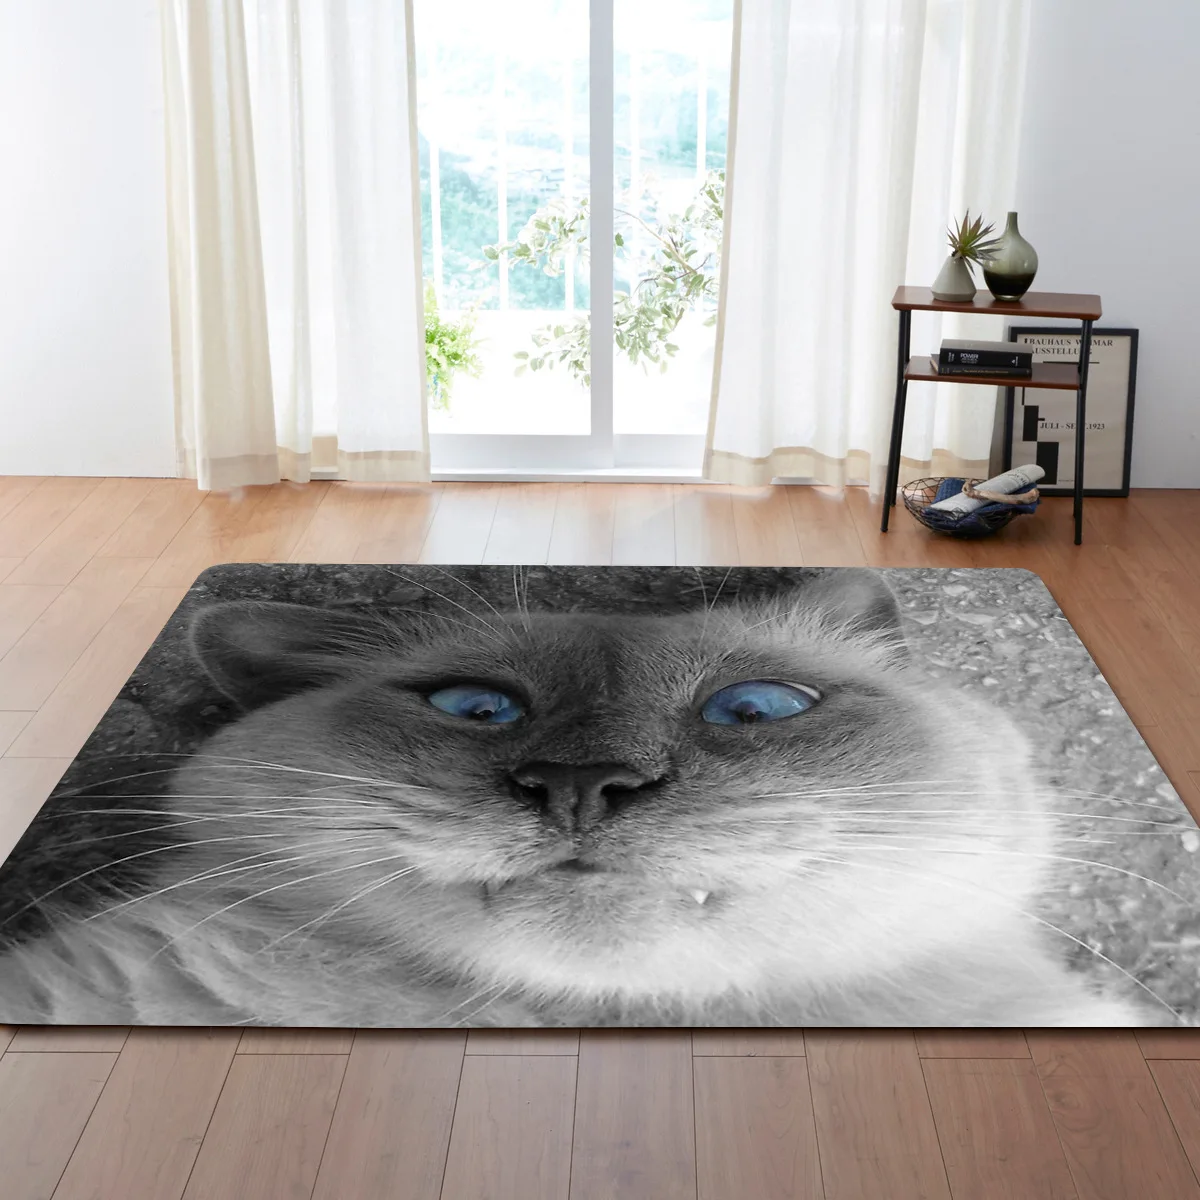 23 вида кошек 3D печатные большие ковры дружественный Кот гостиная украшения Спальня, зал чай стол области коврик мягкая фланель - Цвет: 3